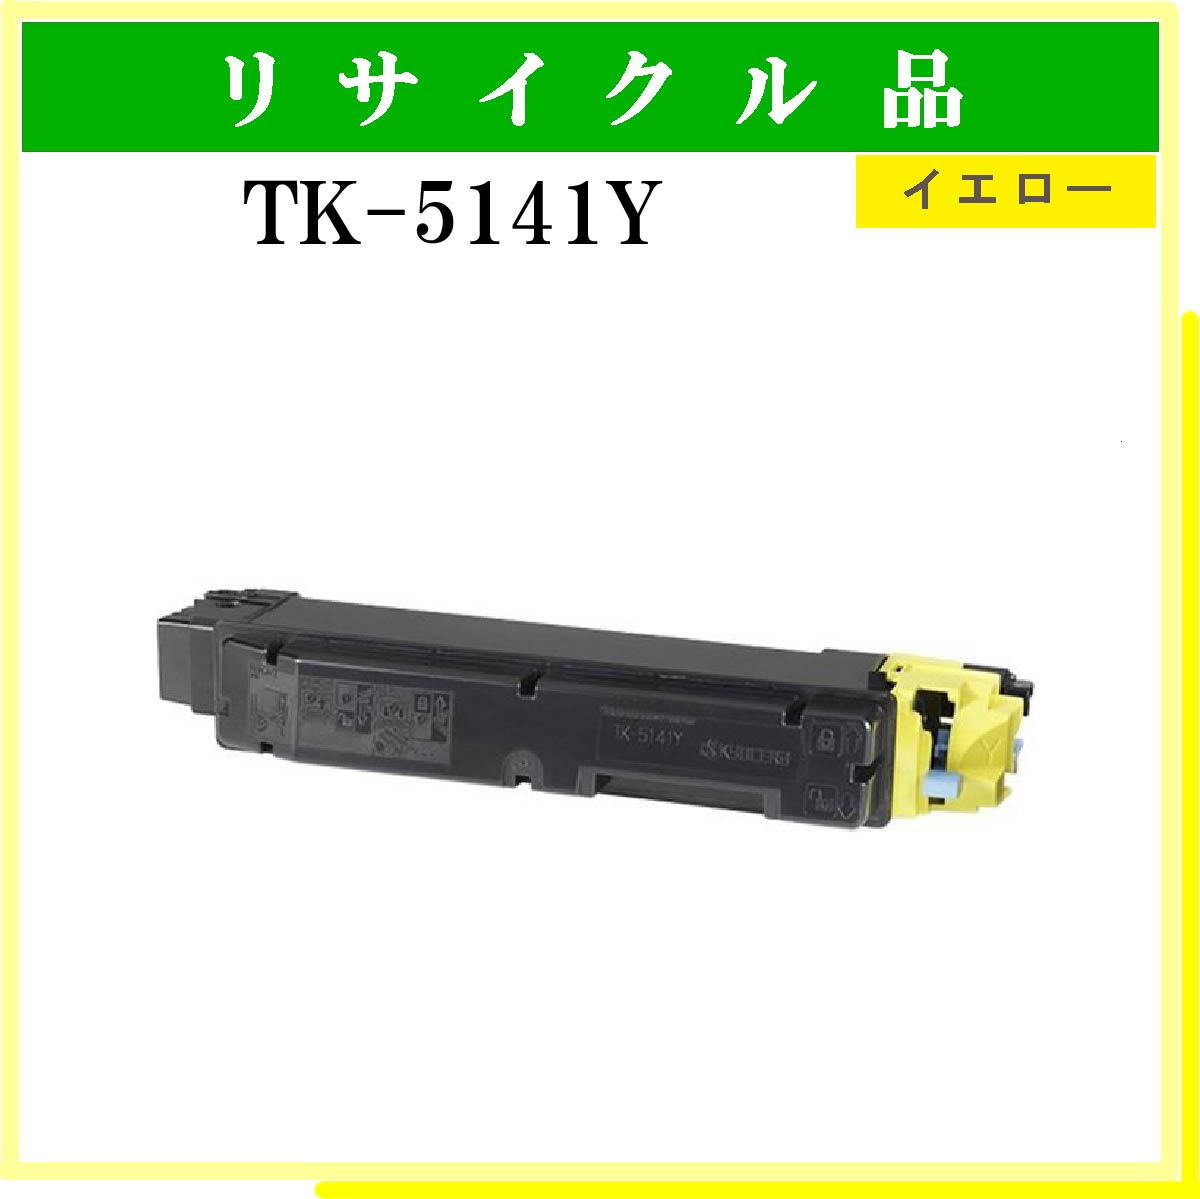 TK-5141Y